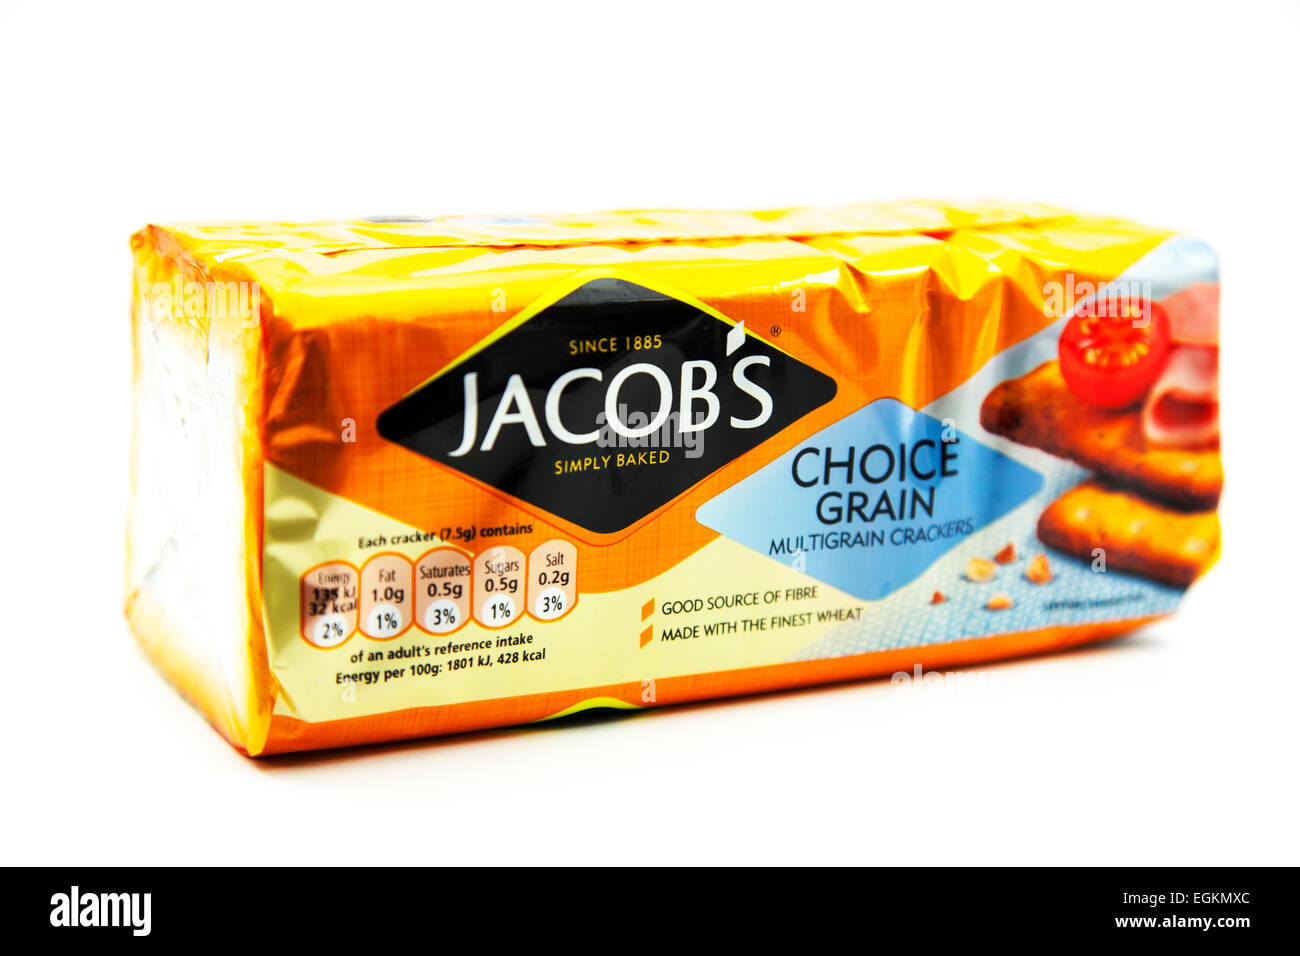 Galletas de Jacob Jacobs multigrain crema pack paquete producto logotipo recorte recorte fondo blanco copia espacio aislado Foto de stock